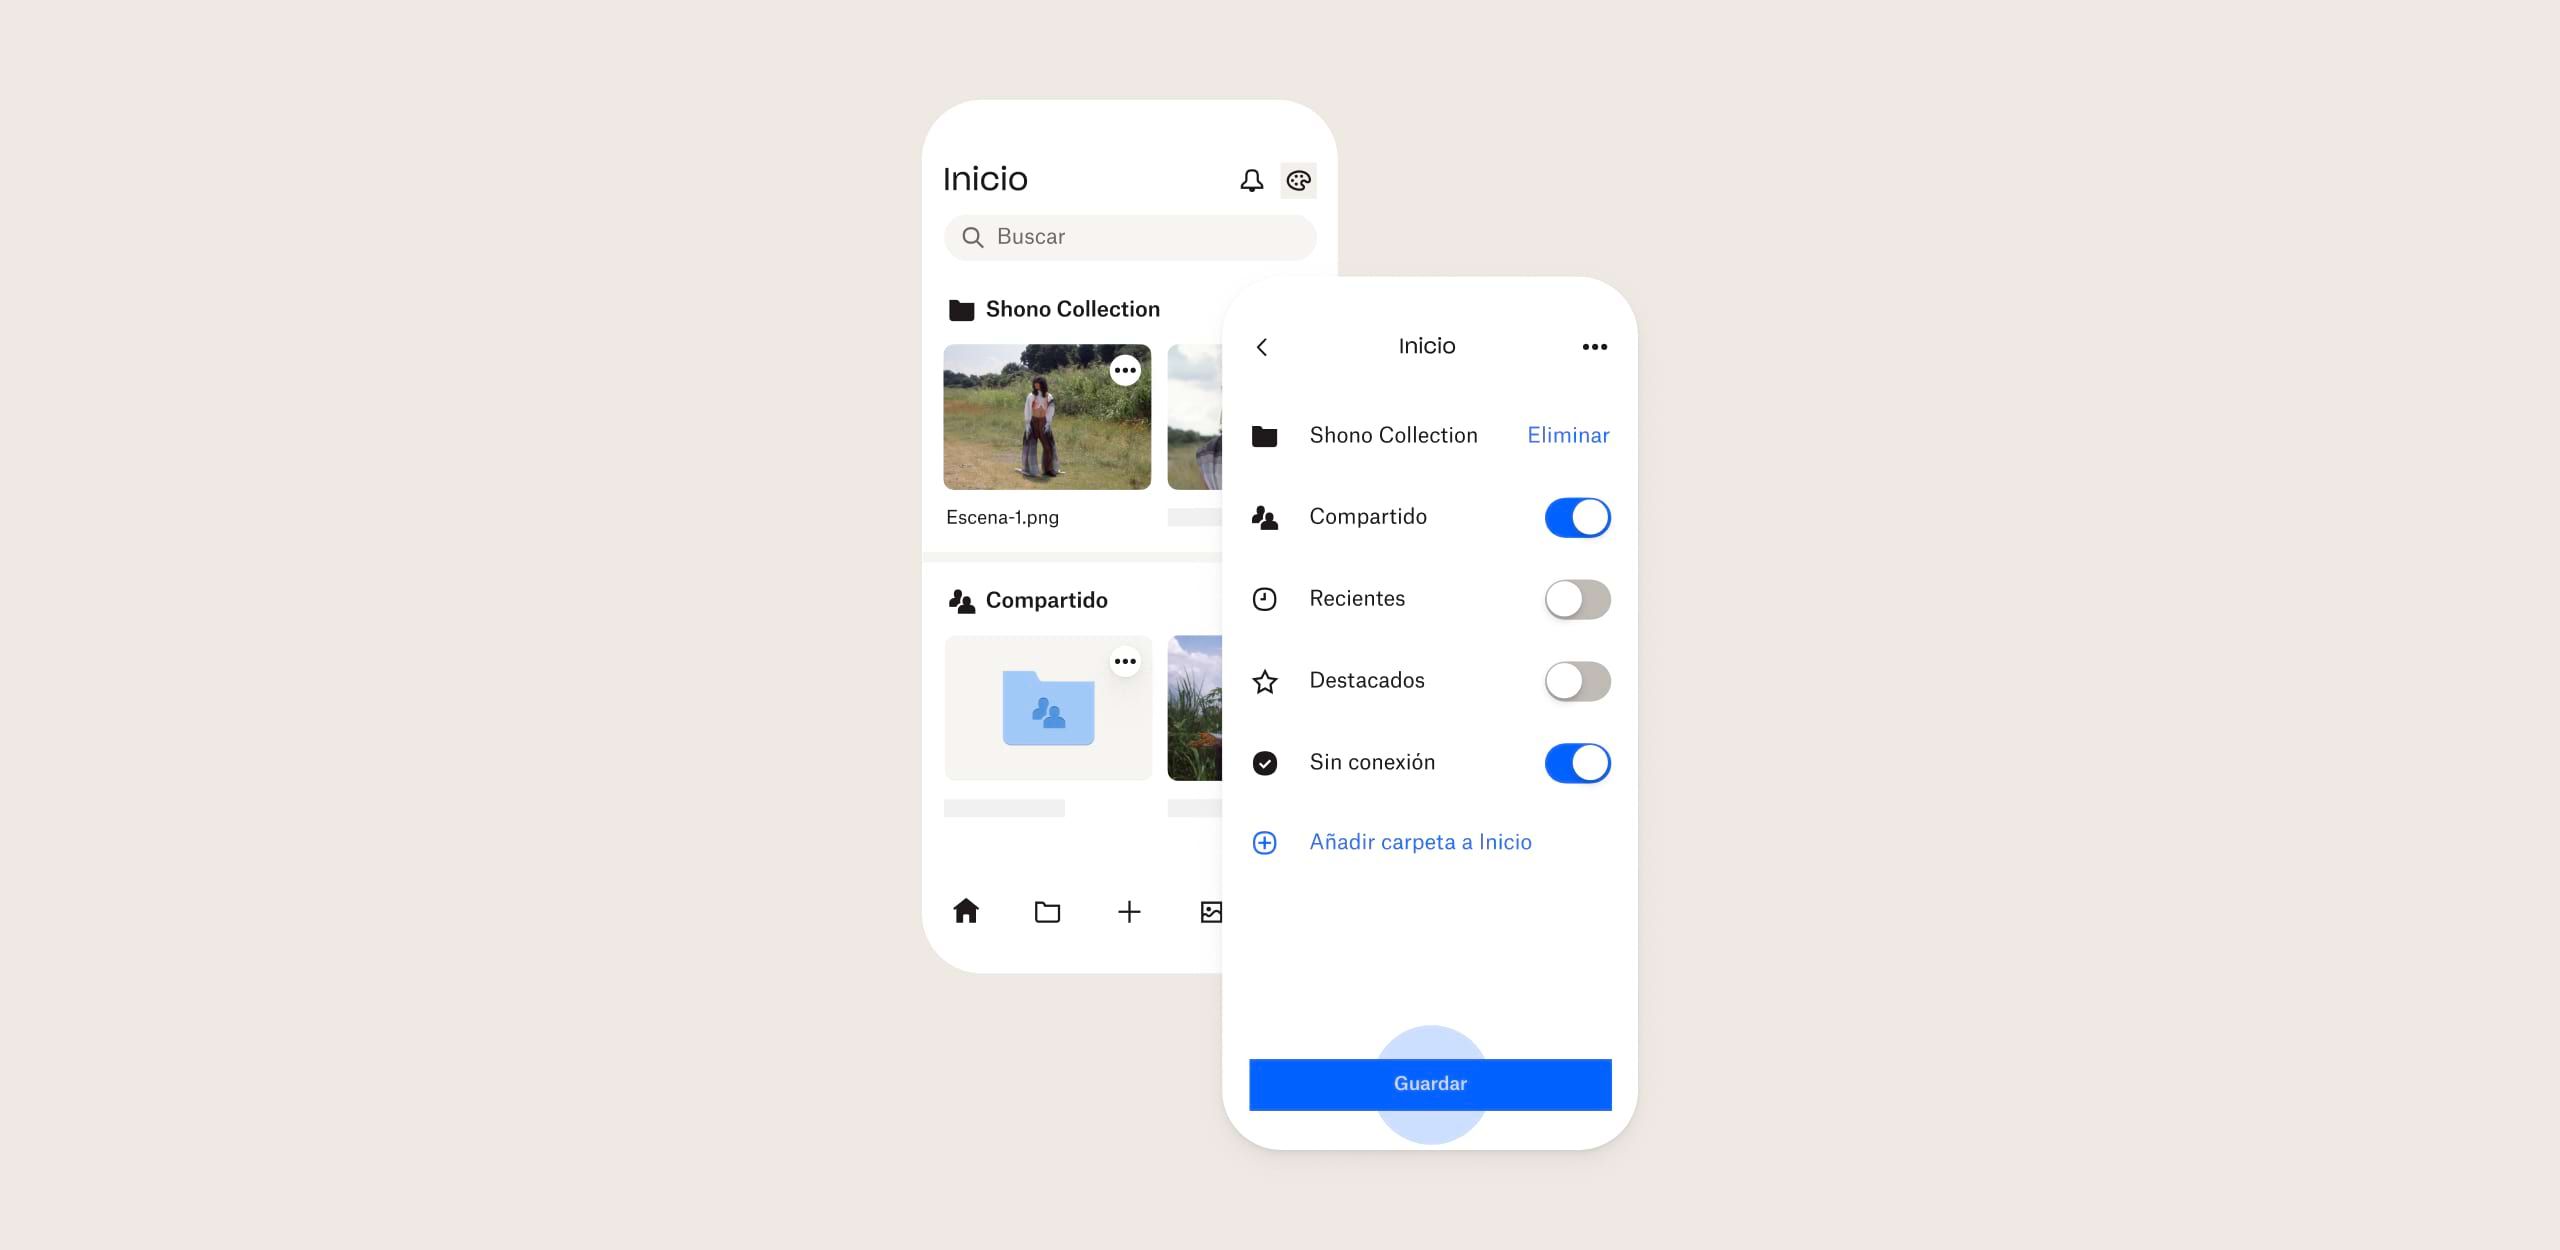 Interfaz de Dropbox para iOS actualizada con los botones de uso compartido y sin conexión habilitados